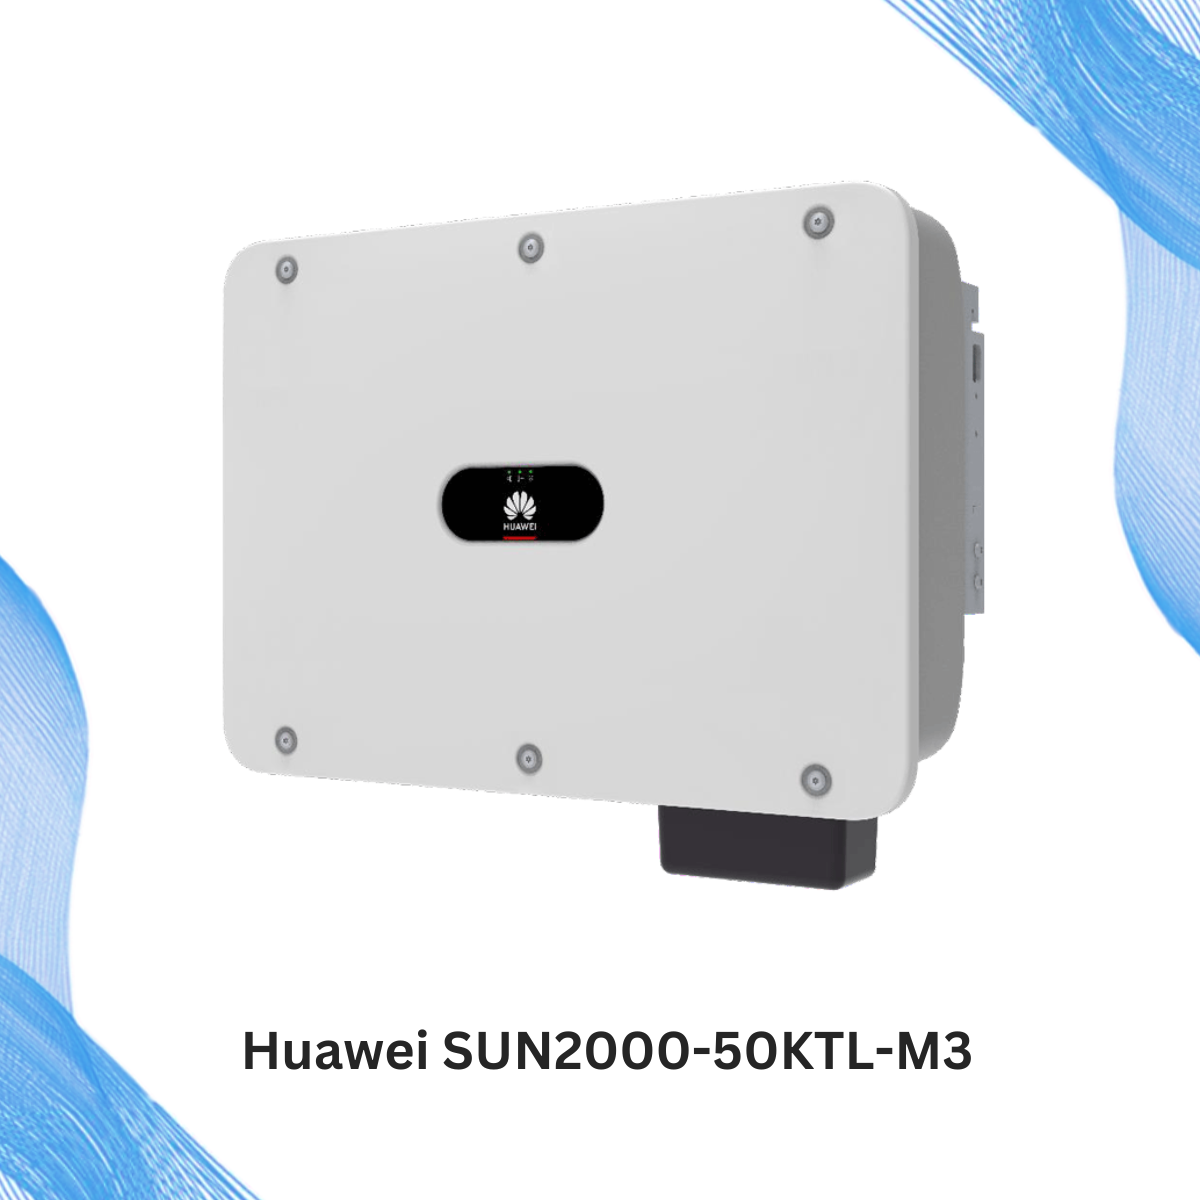 Huawei SUN2000-50KTL-M3 (1)